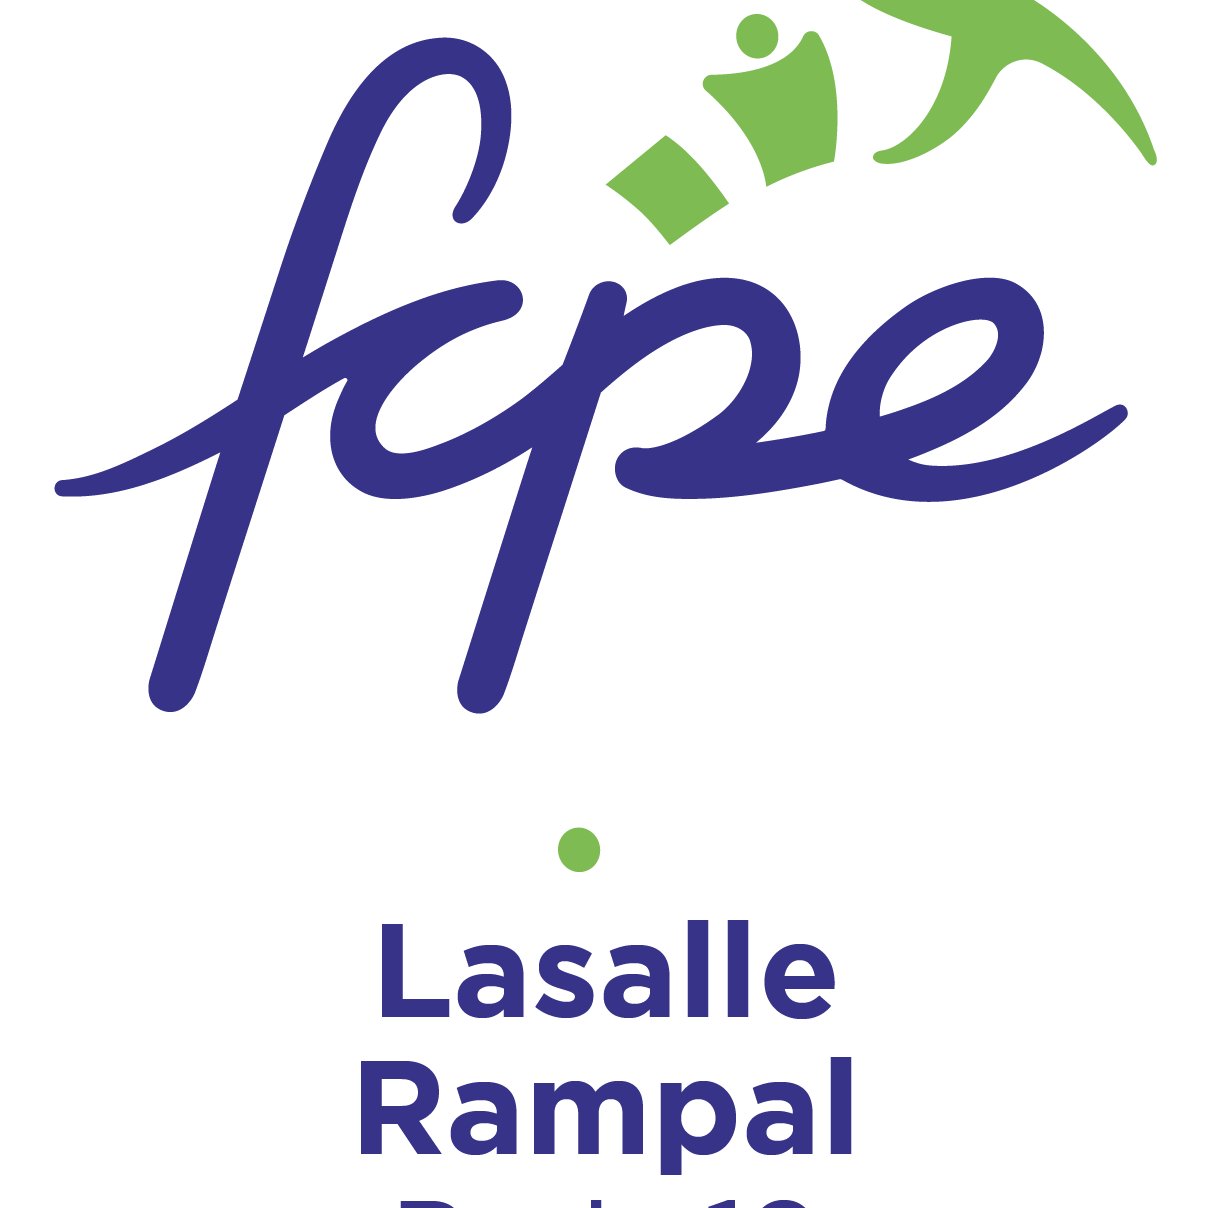 Conseil local FCPE des écoles maternelles et élémentaires Lasalle - Rampal (Paris 19ème)
Suivez nous : https://t.co/Pg2htgVoZA